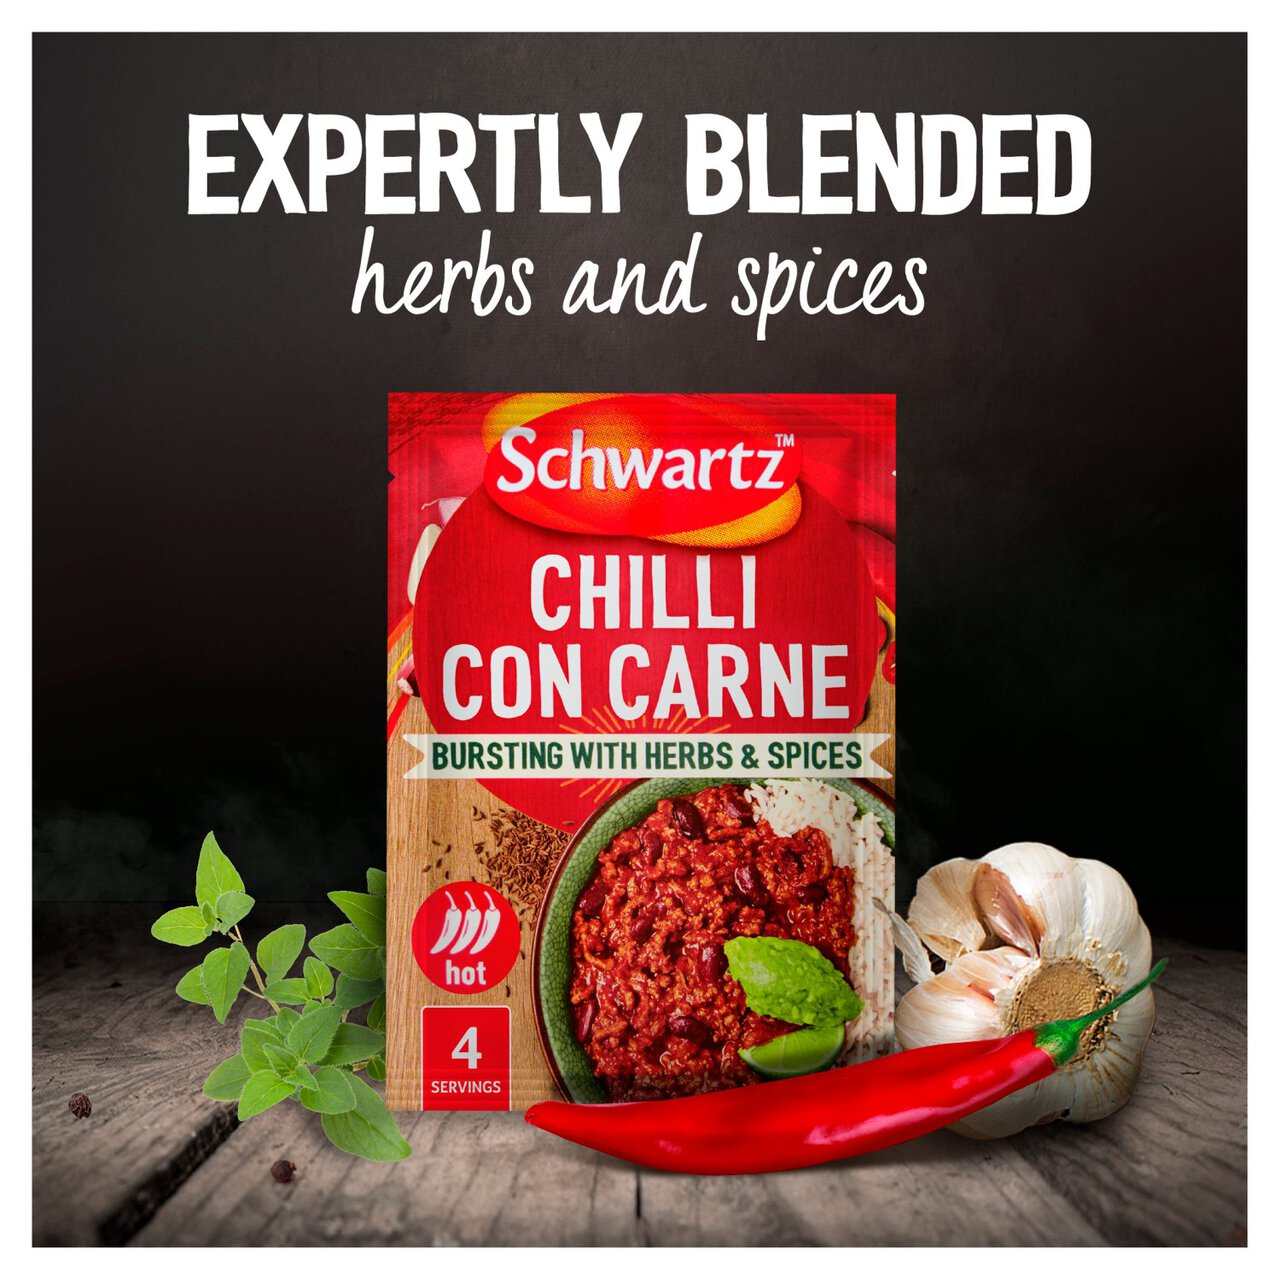 Schwartz Chilli Con Carne Mix 41g